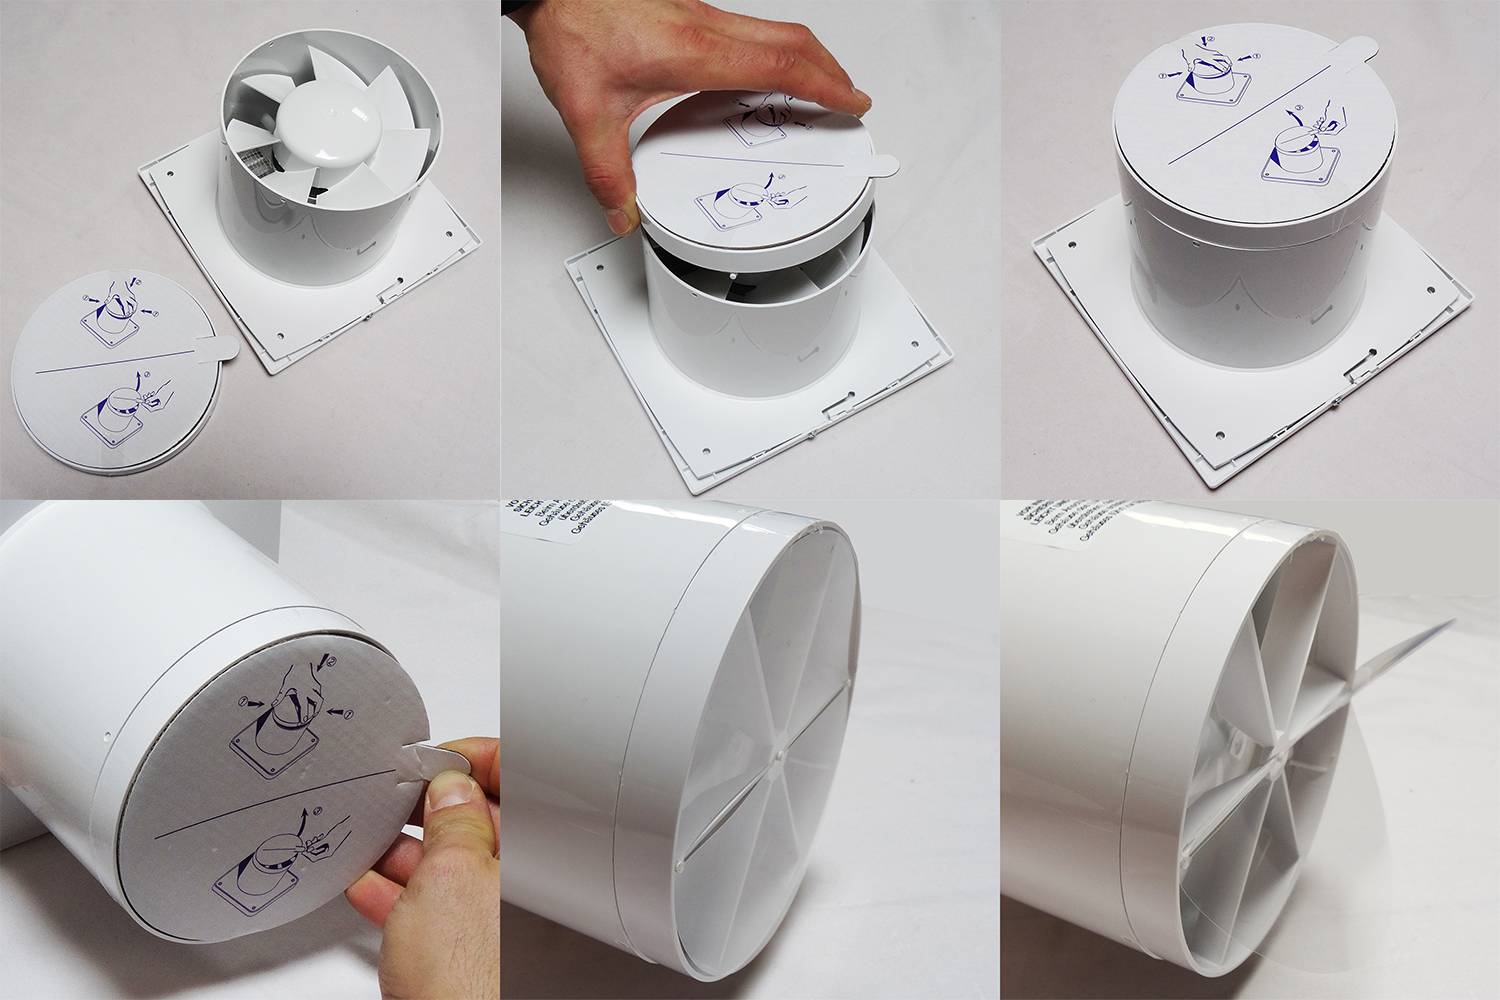 Приточные клапаны в пластиковых окнах своими руками: как улучшить вентиляцию в квартире | o-builder.ru